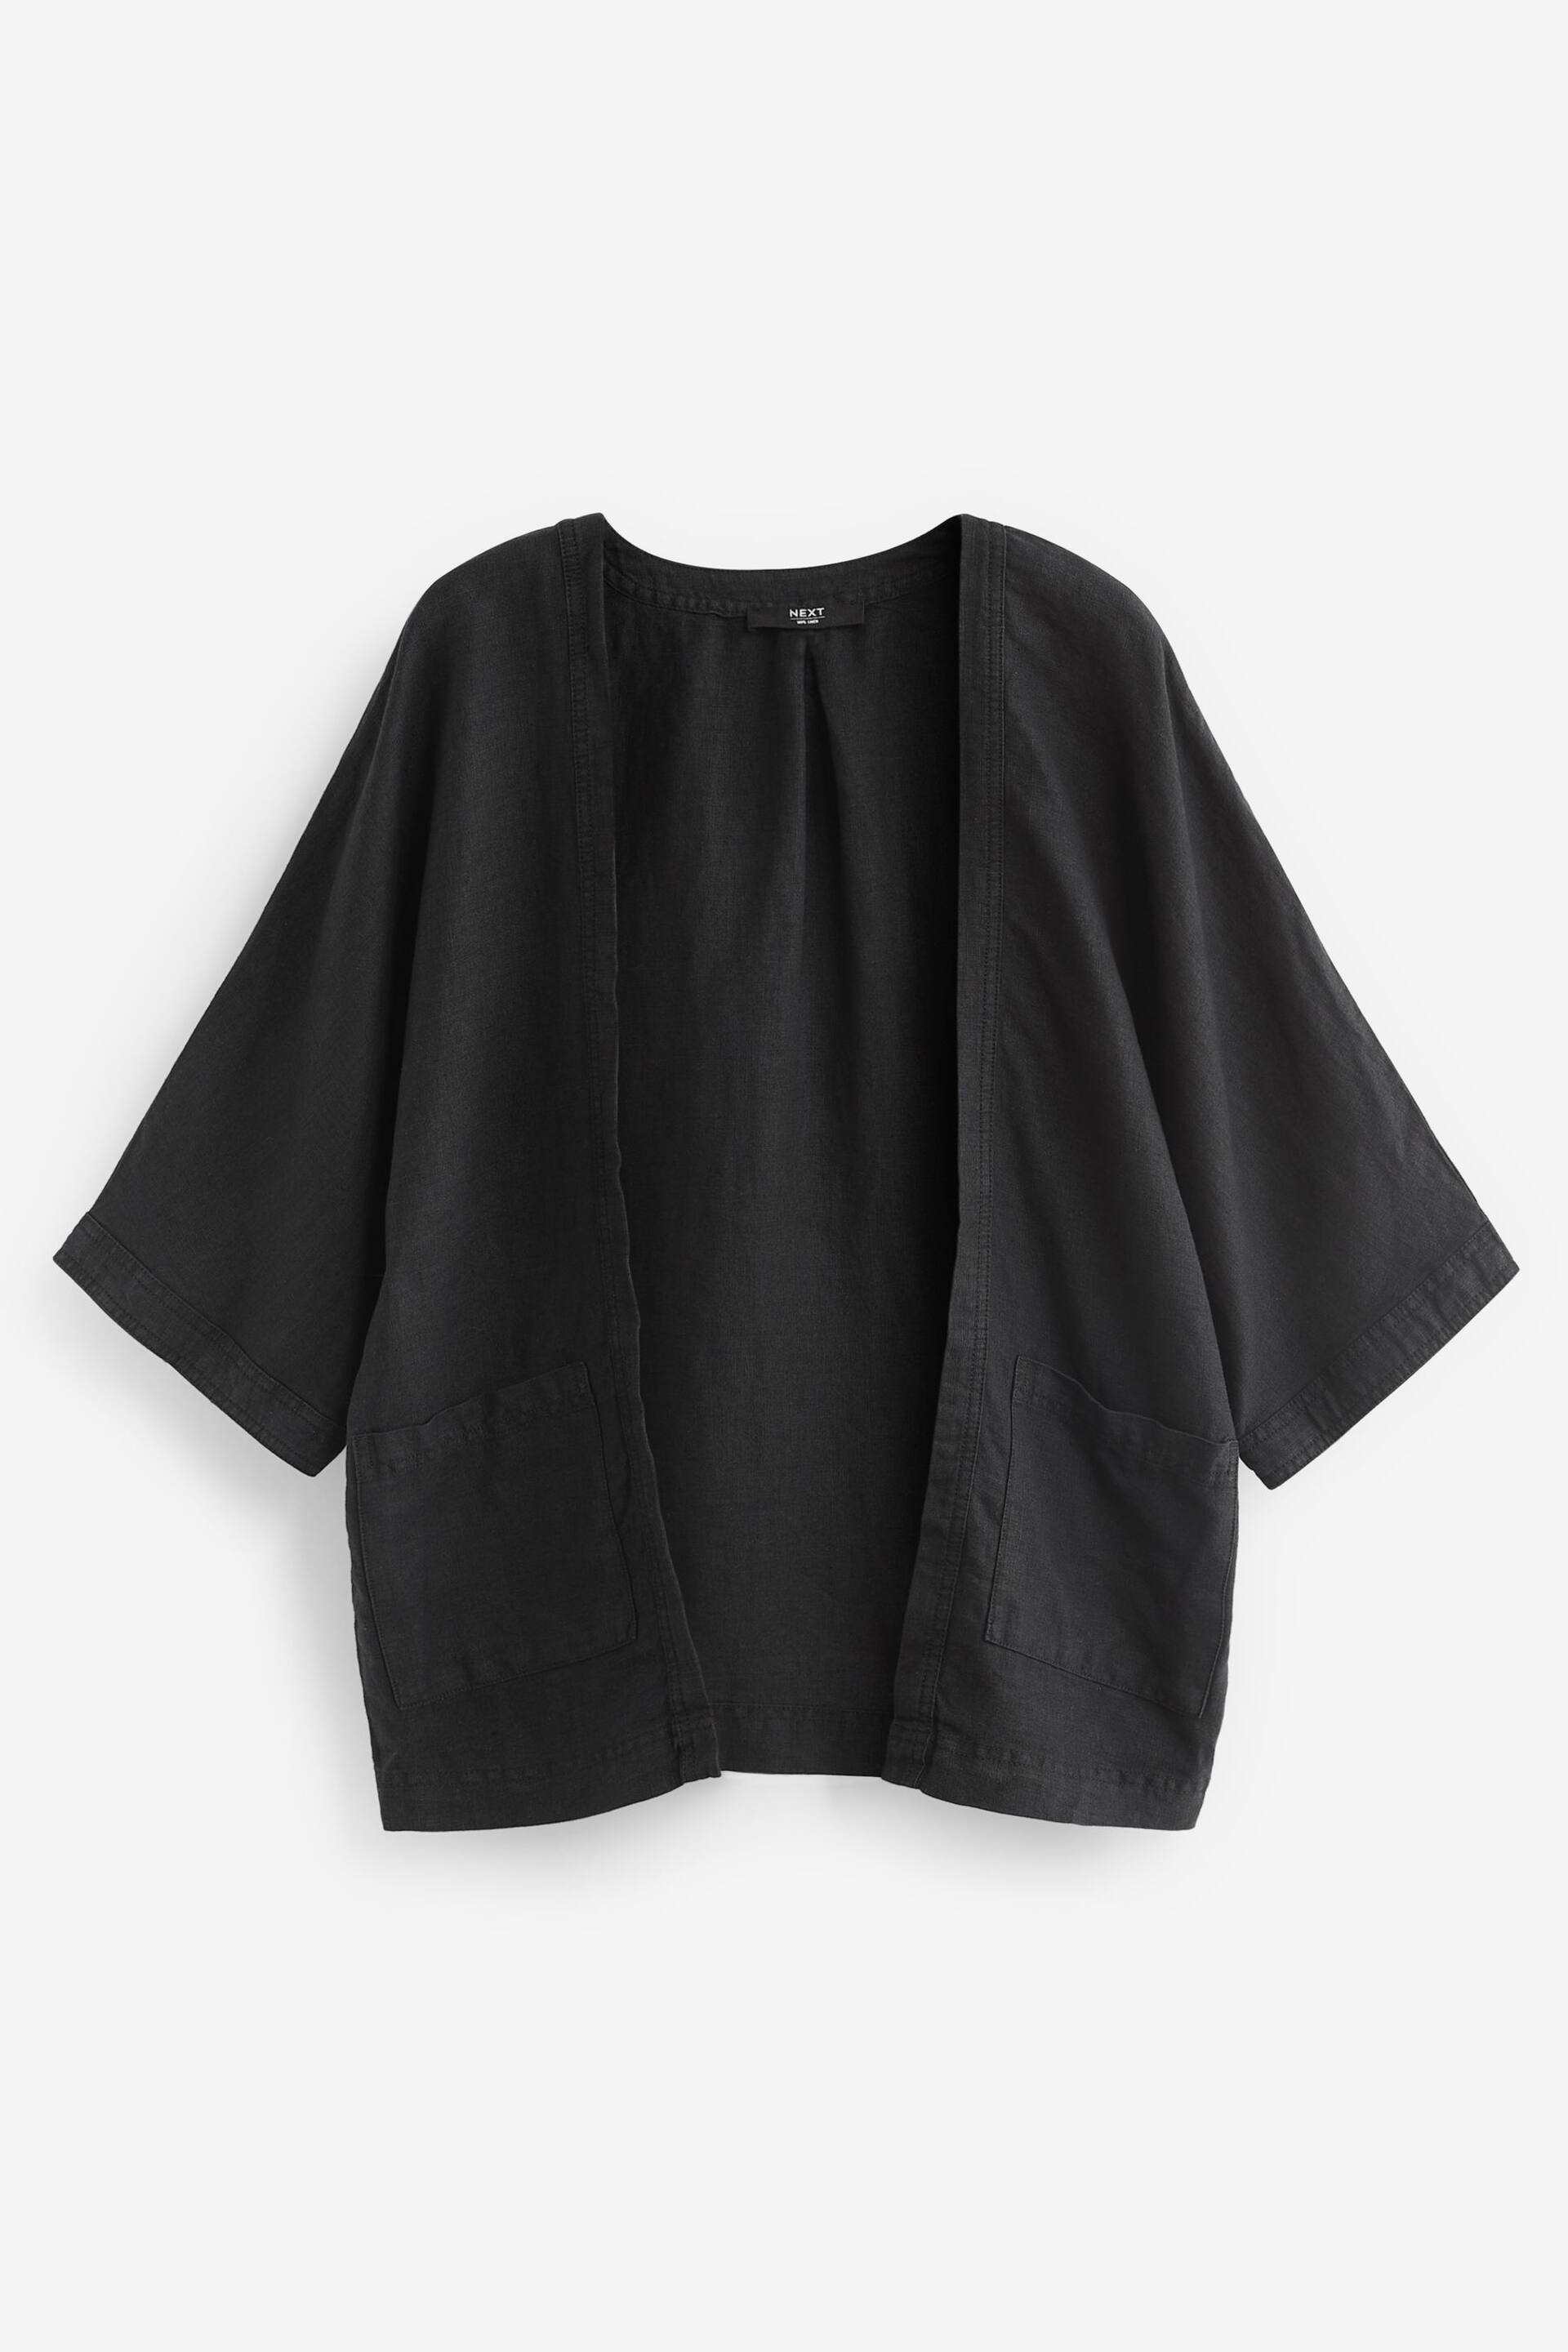 Black 100% Linen Jacket - Image 7 of 7